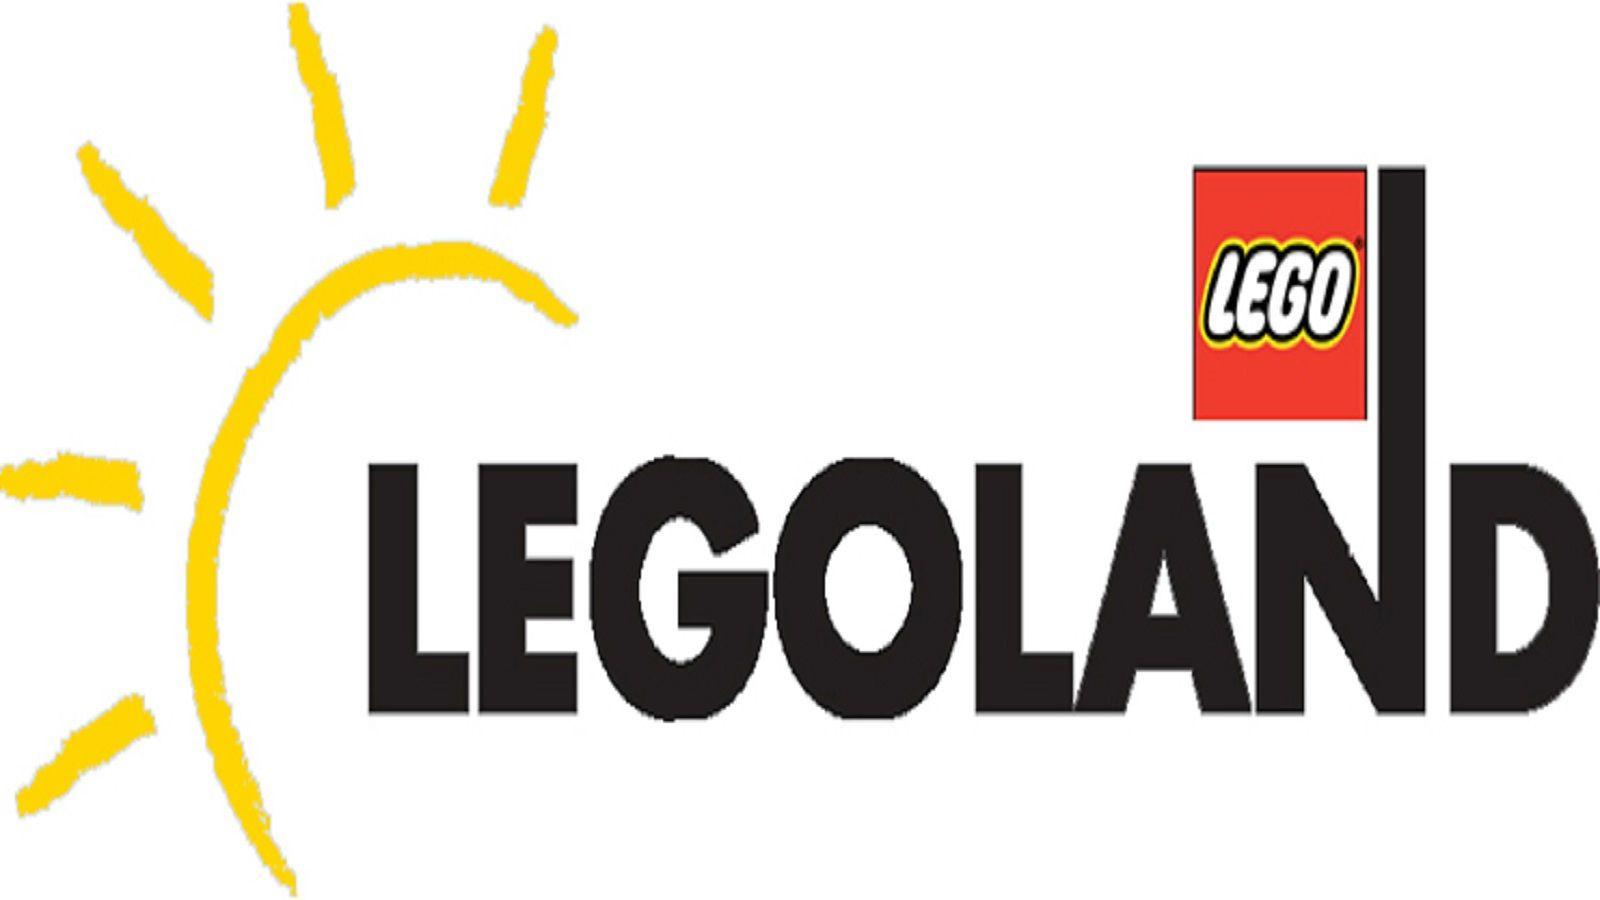 Logoland Logo - Legoland discovery center Logos